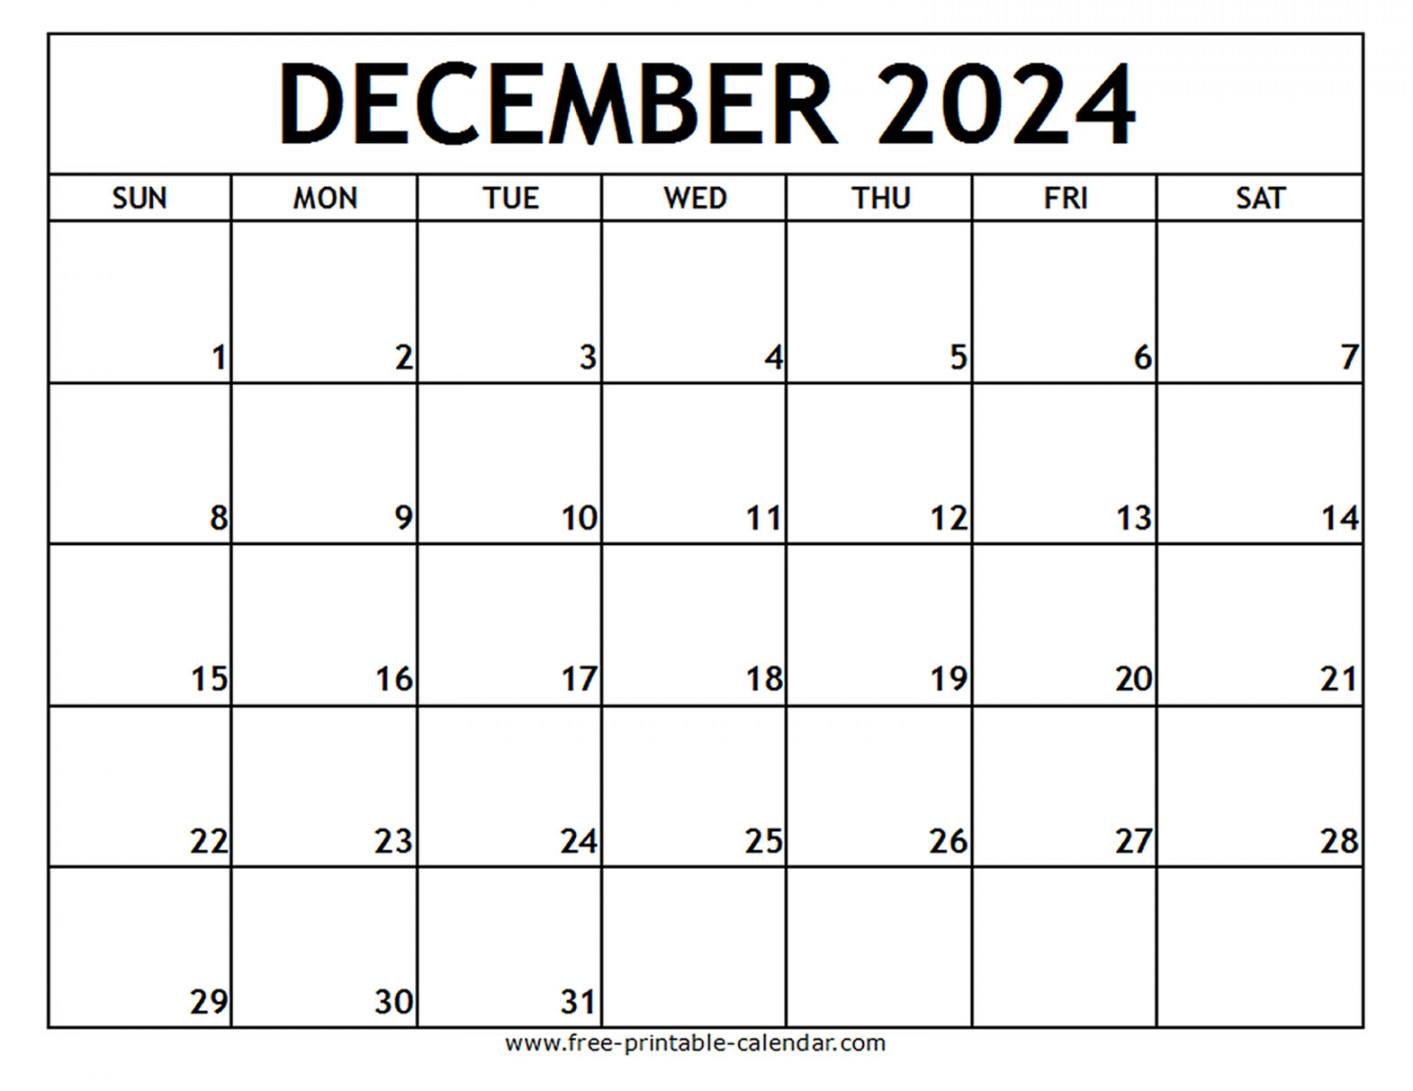 december printable calendar free printable calendar com 2